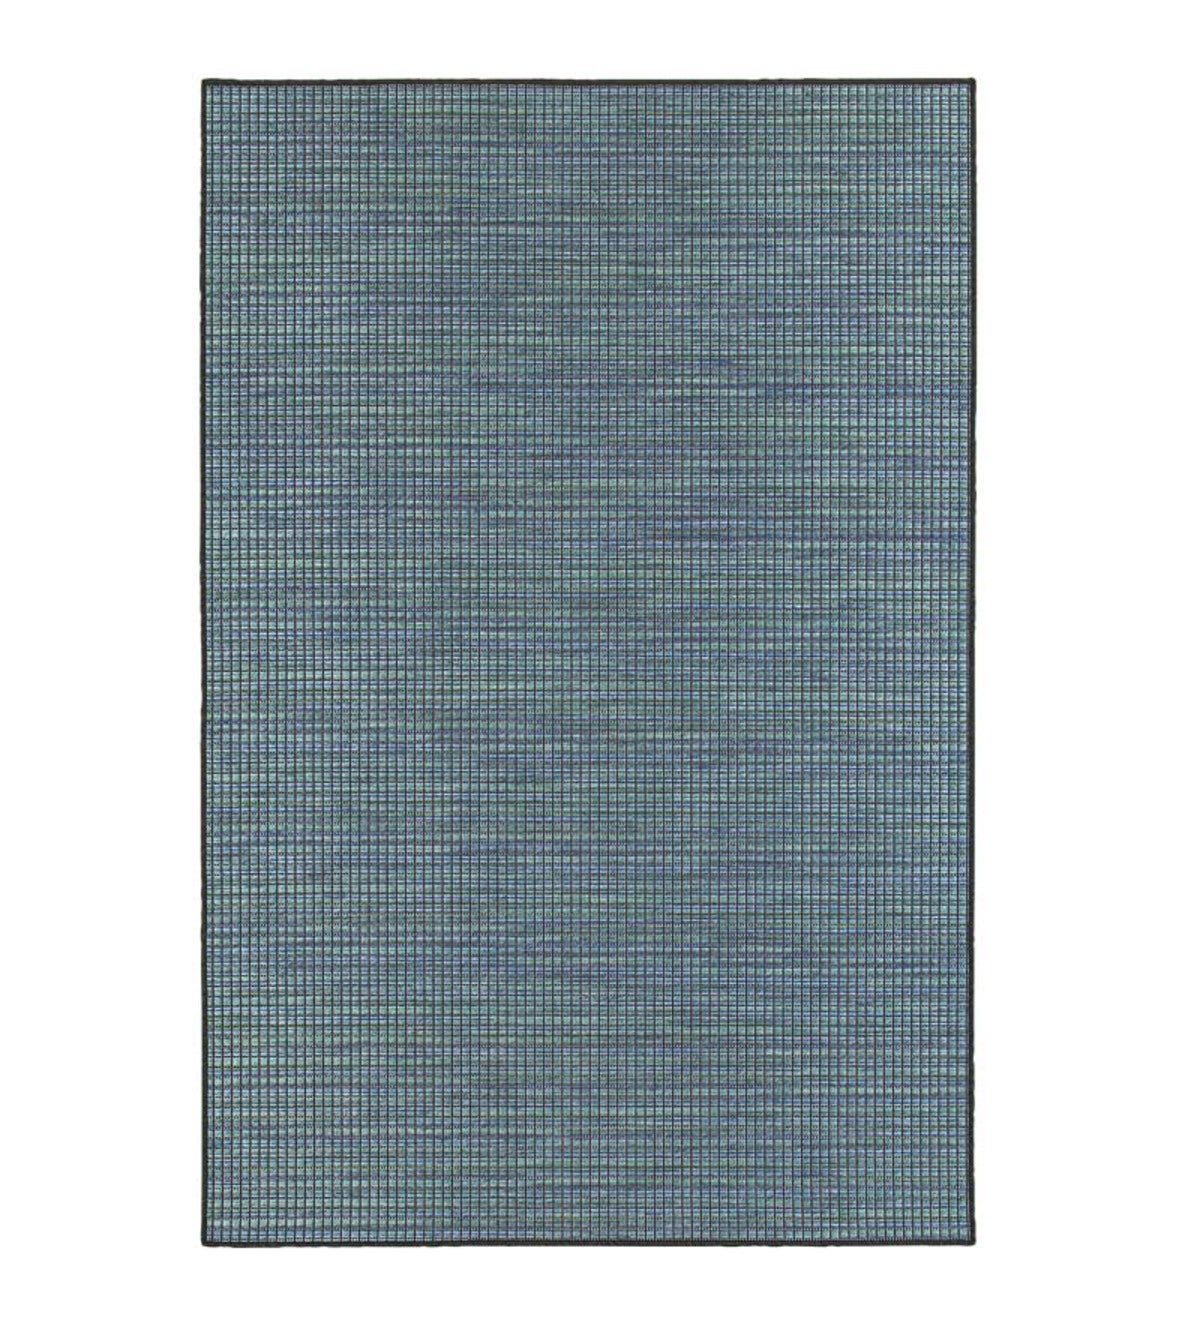 Elements Textured Indoor/Outdoor Rug, 5'3”x 7'6” - Blue/Tan